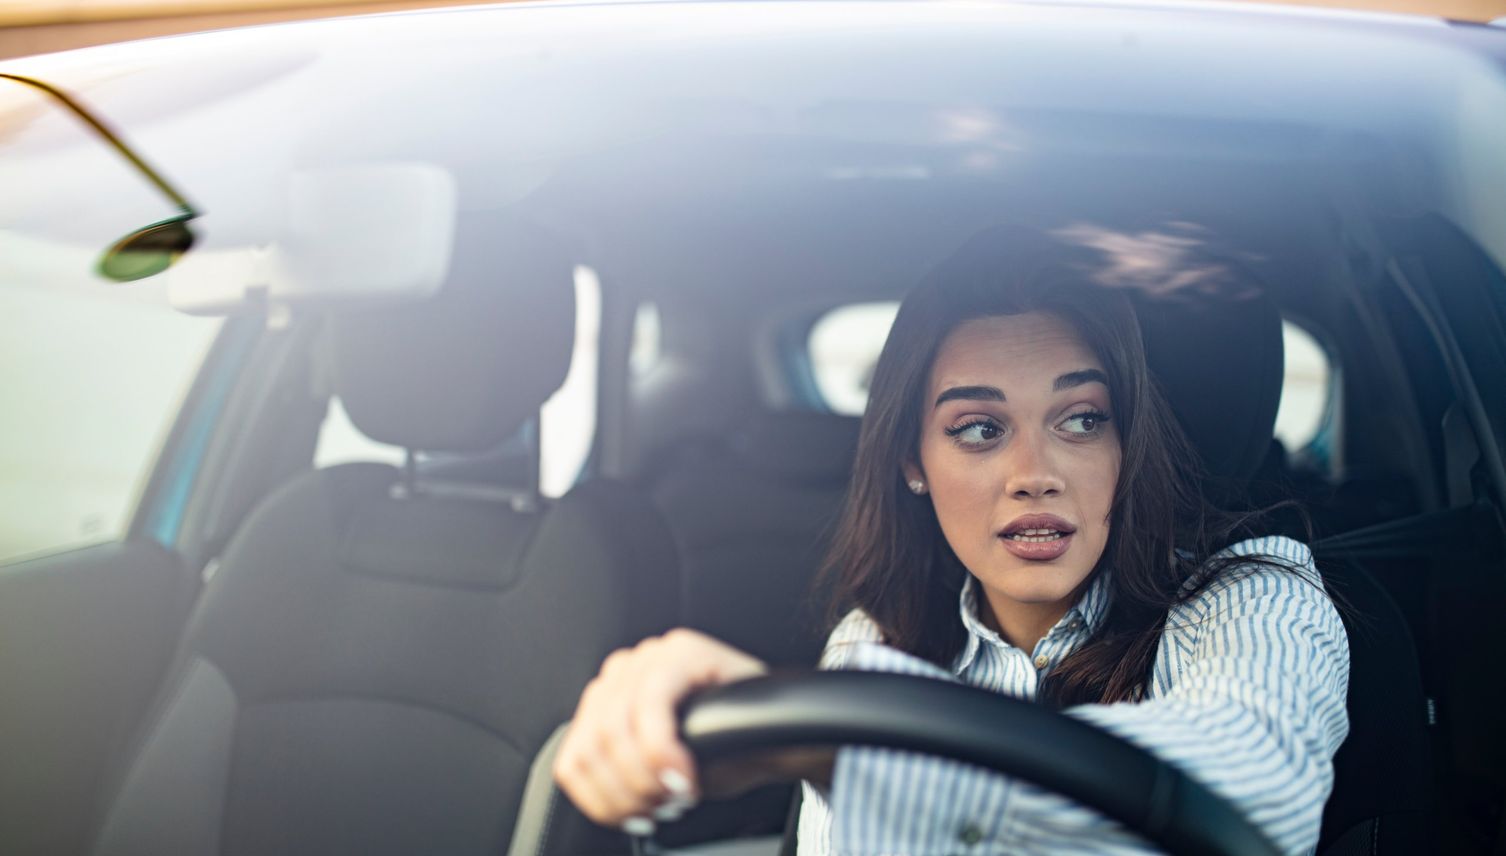 Autofahren: Frauen sind mies, Männer ticken völlig aus